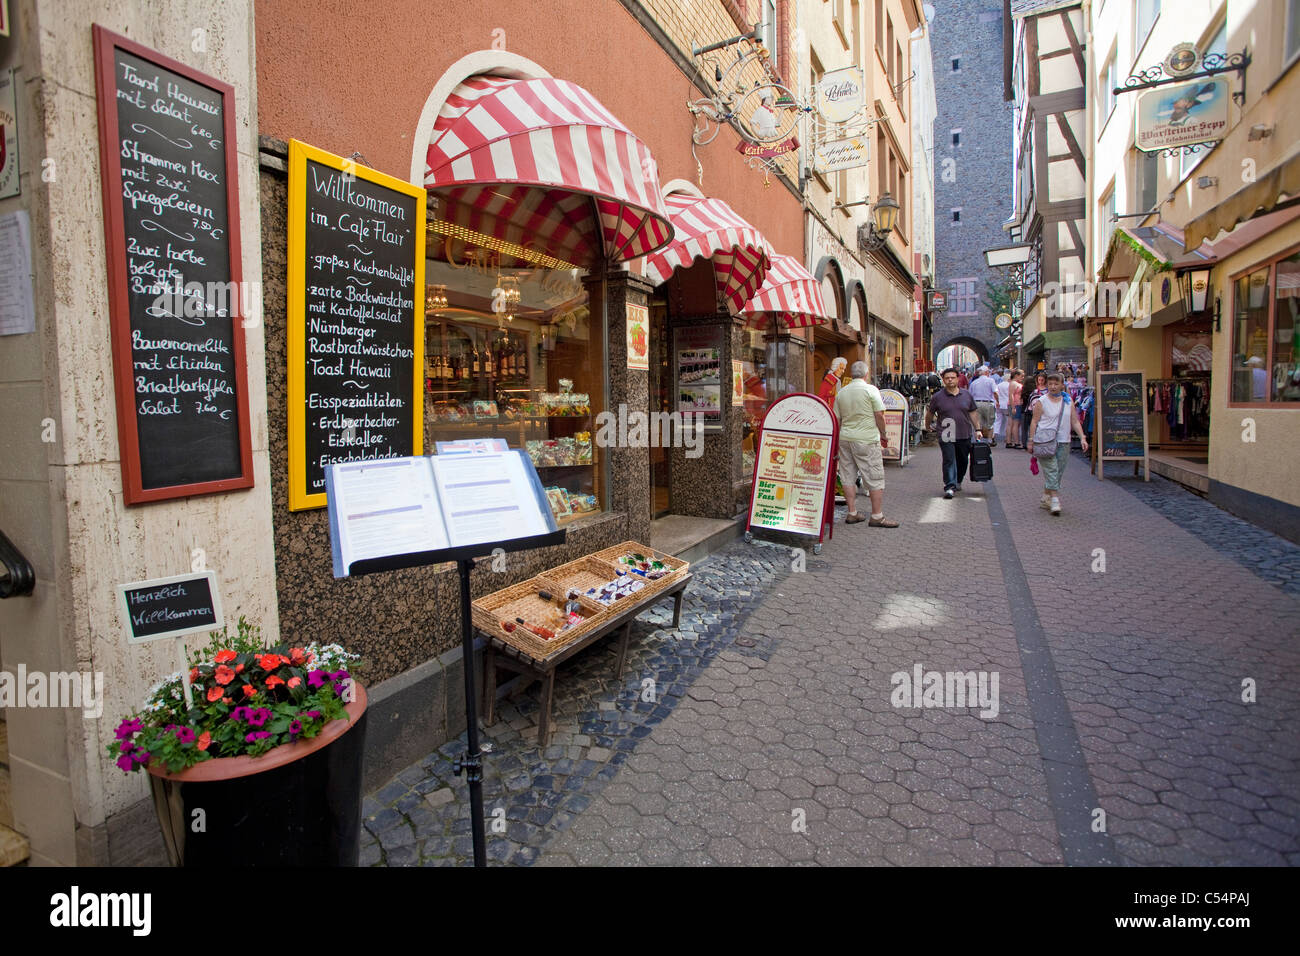 Petite ruelle avec des magasins dans la vieille ville, Cochem, Moselle, rivière Mosel, Rhénanie-Palatinat, Allemagne, Europe Banque D'Images